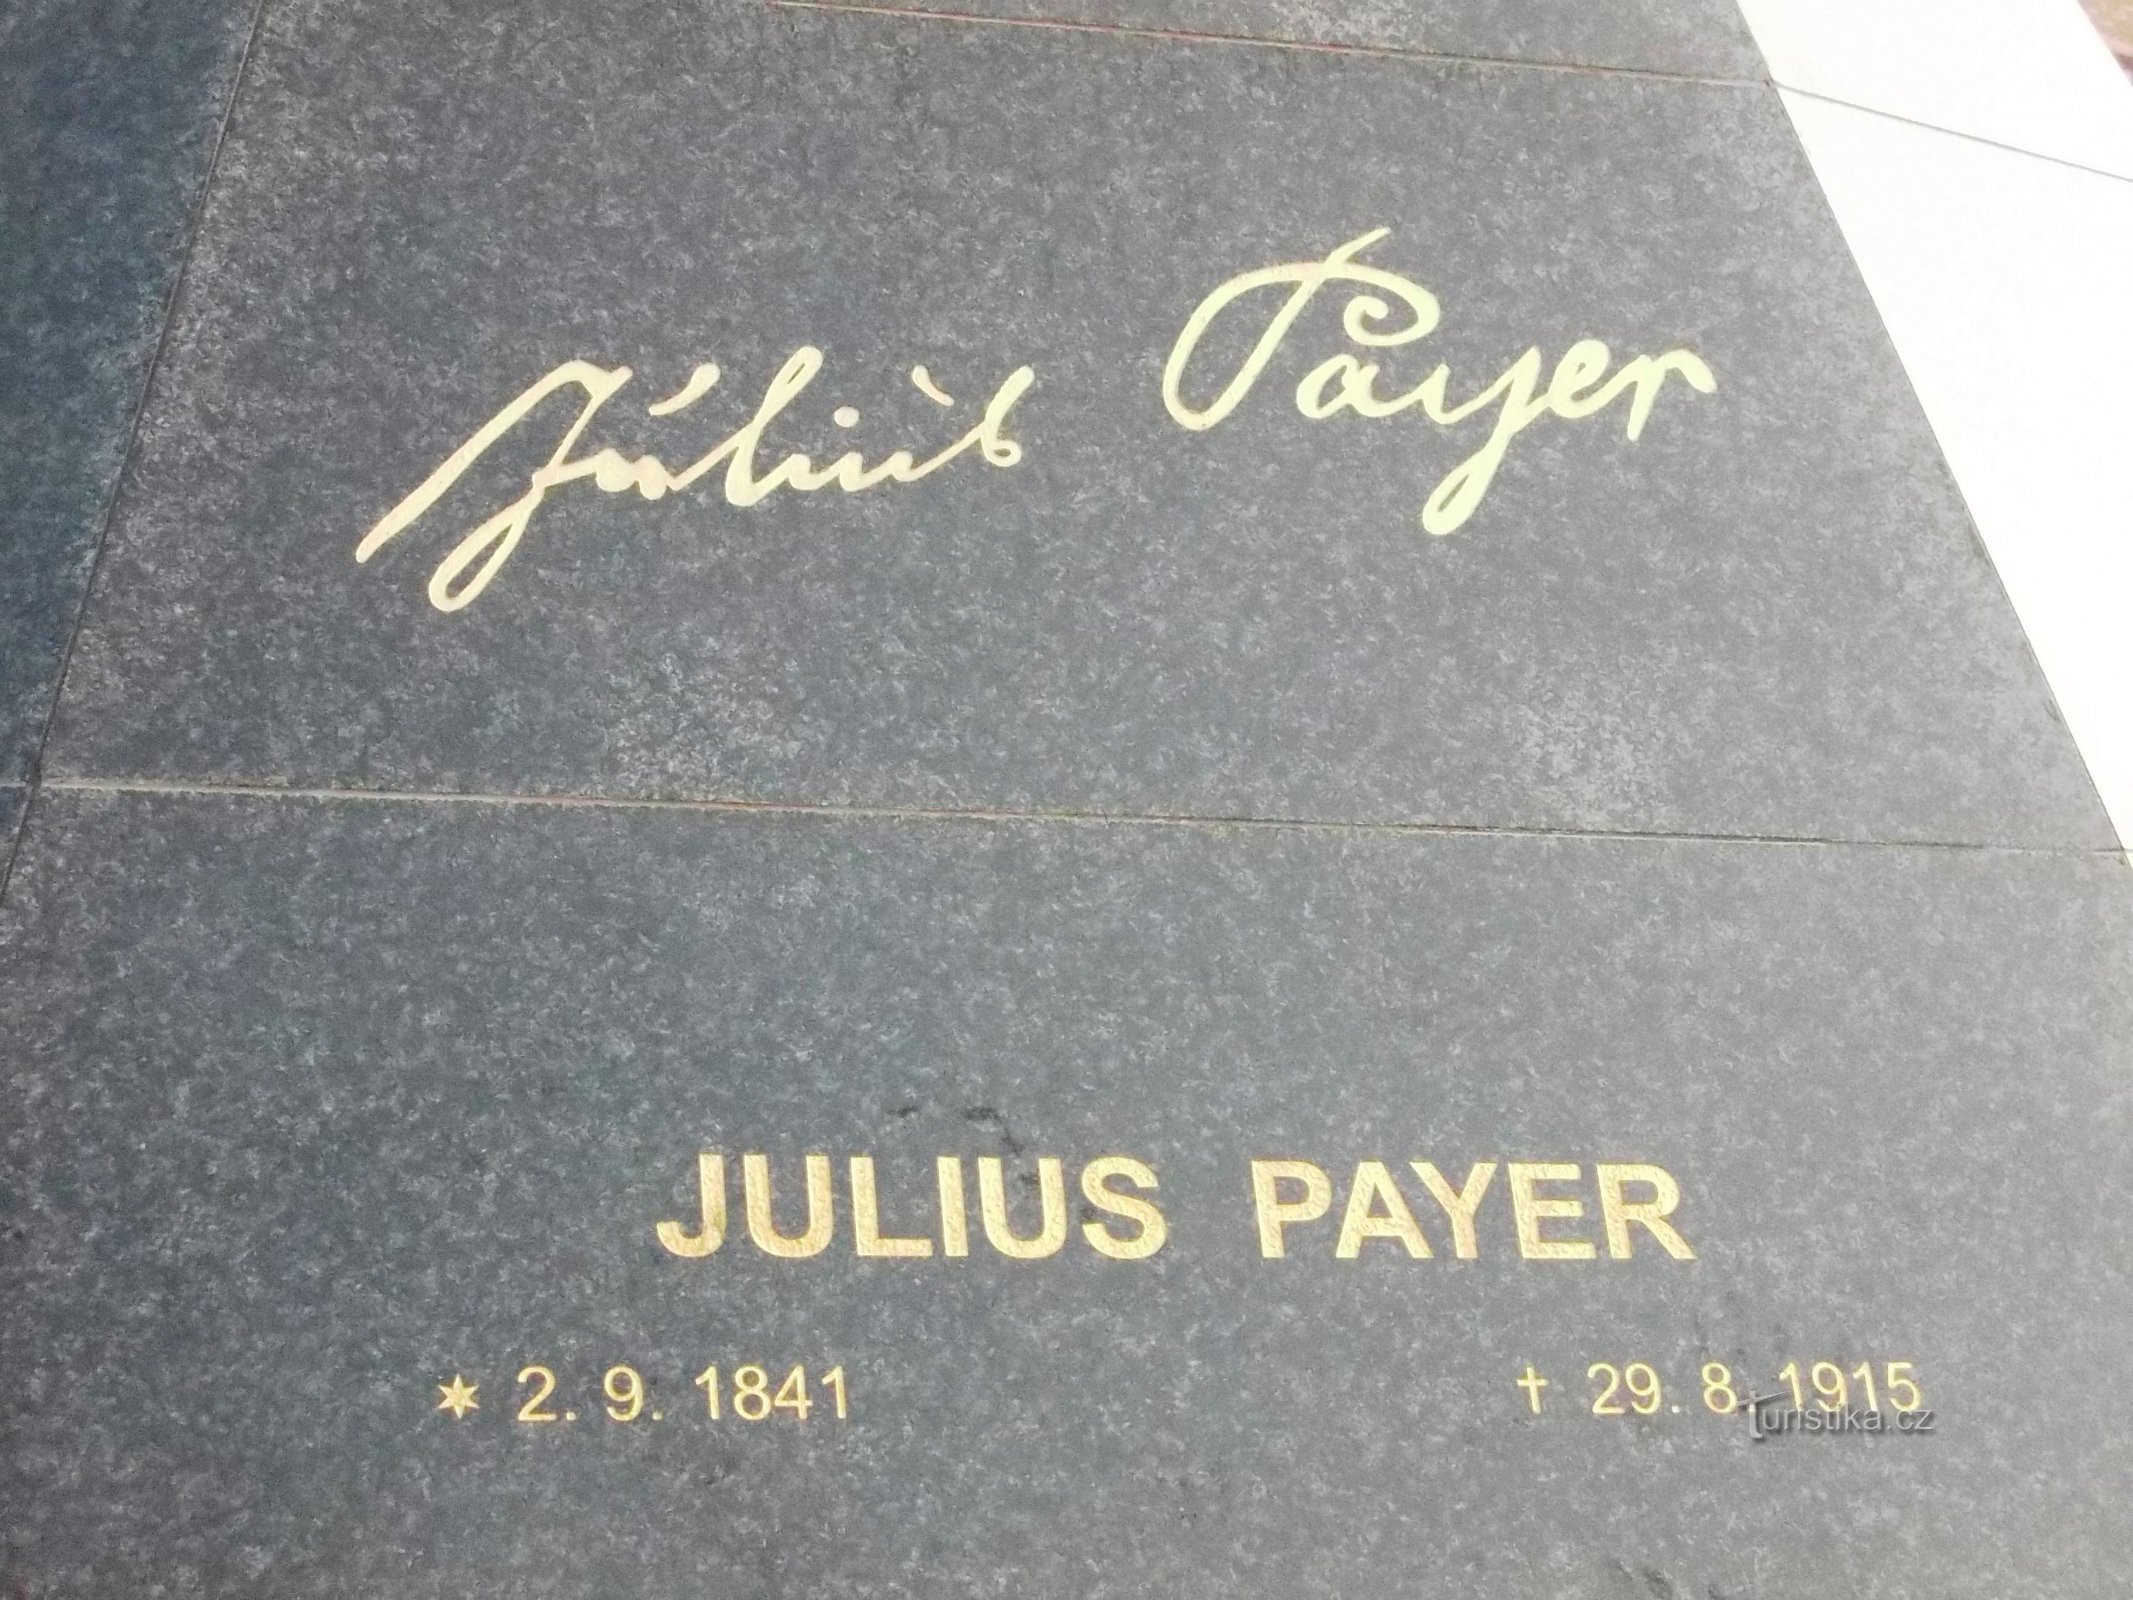 Julius Payer levde åren 1841 - 1915